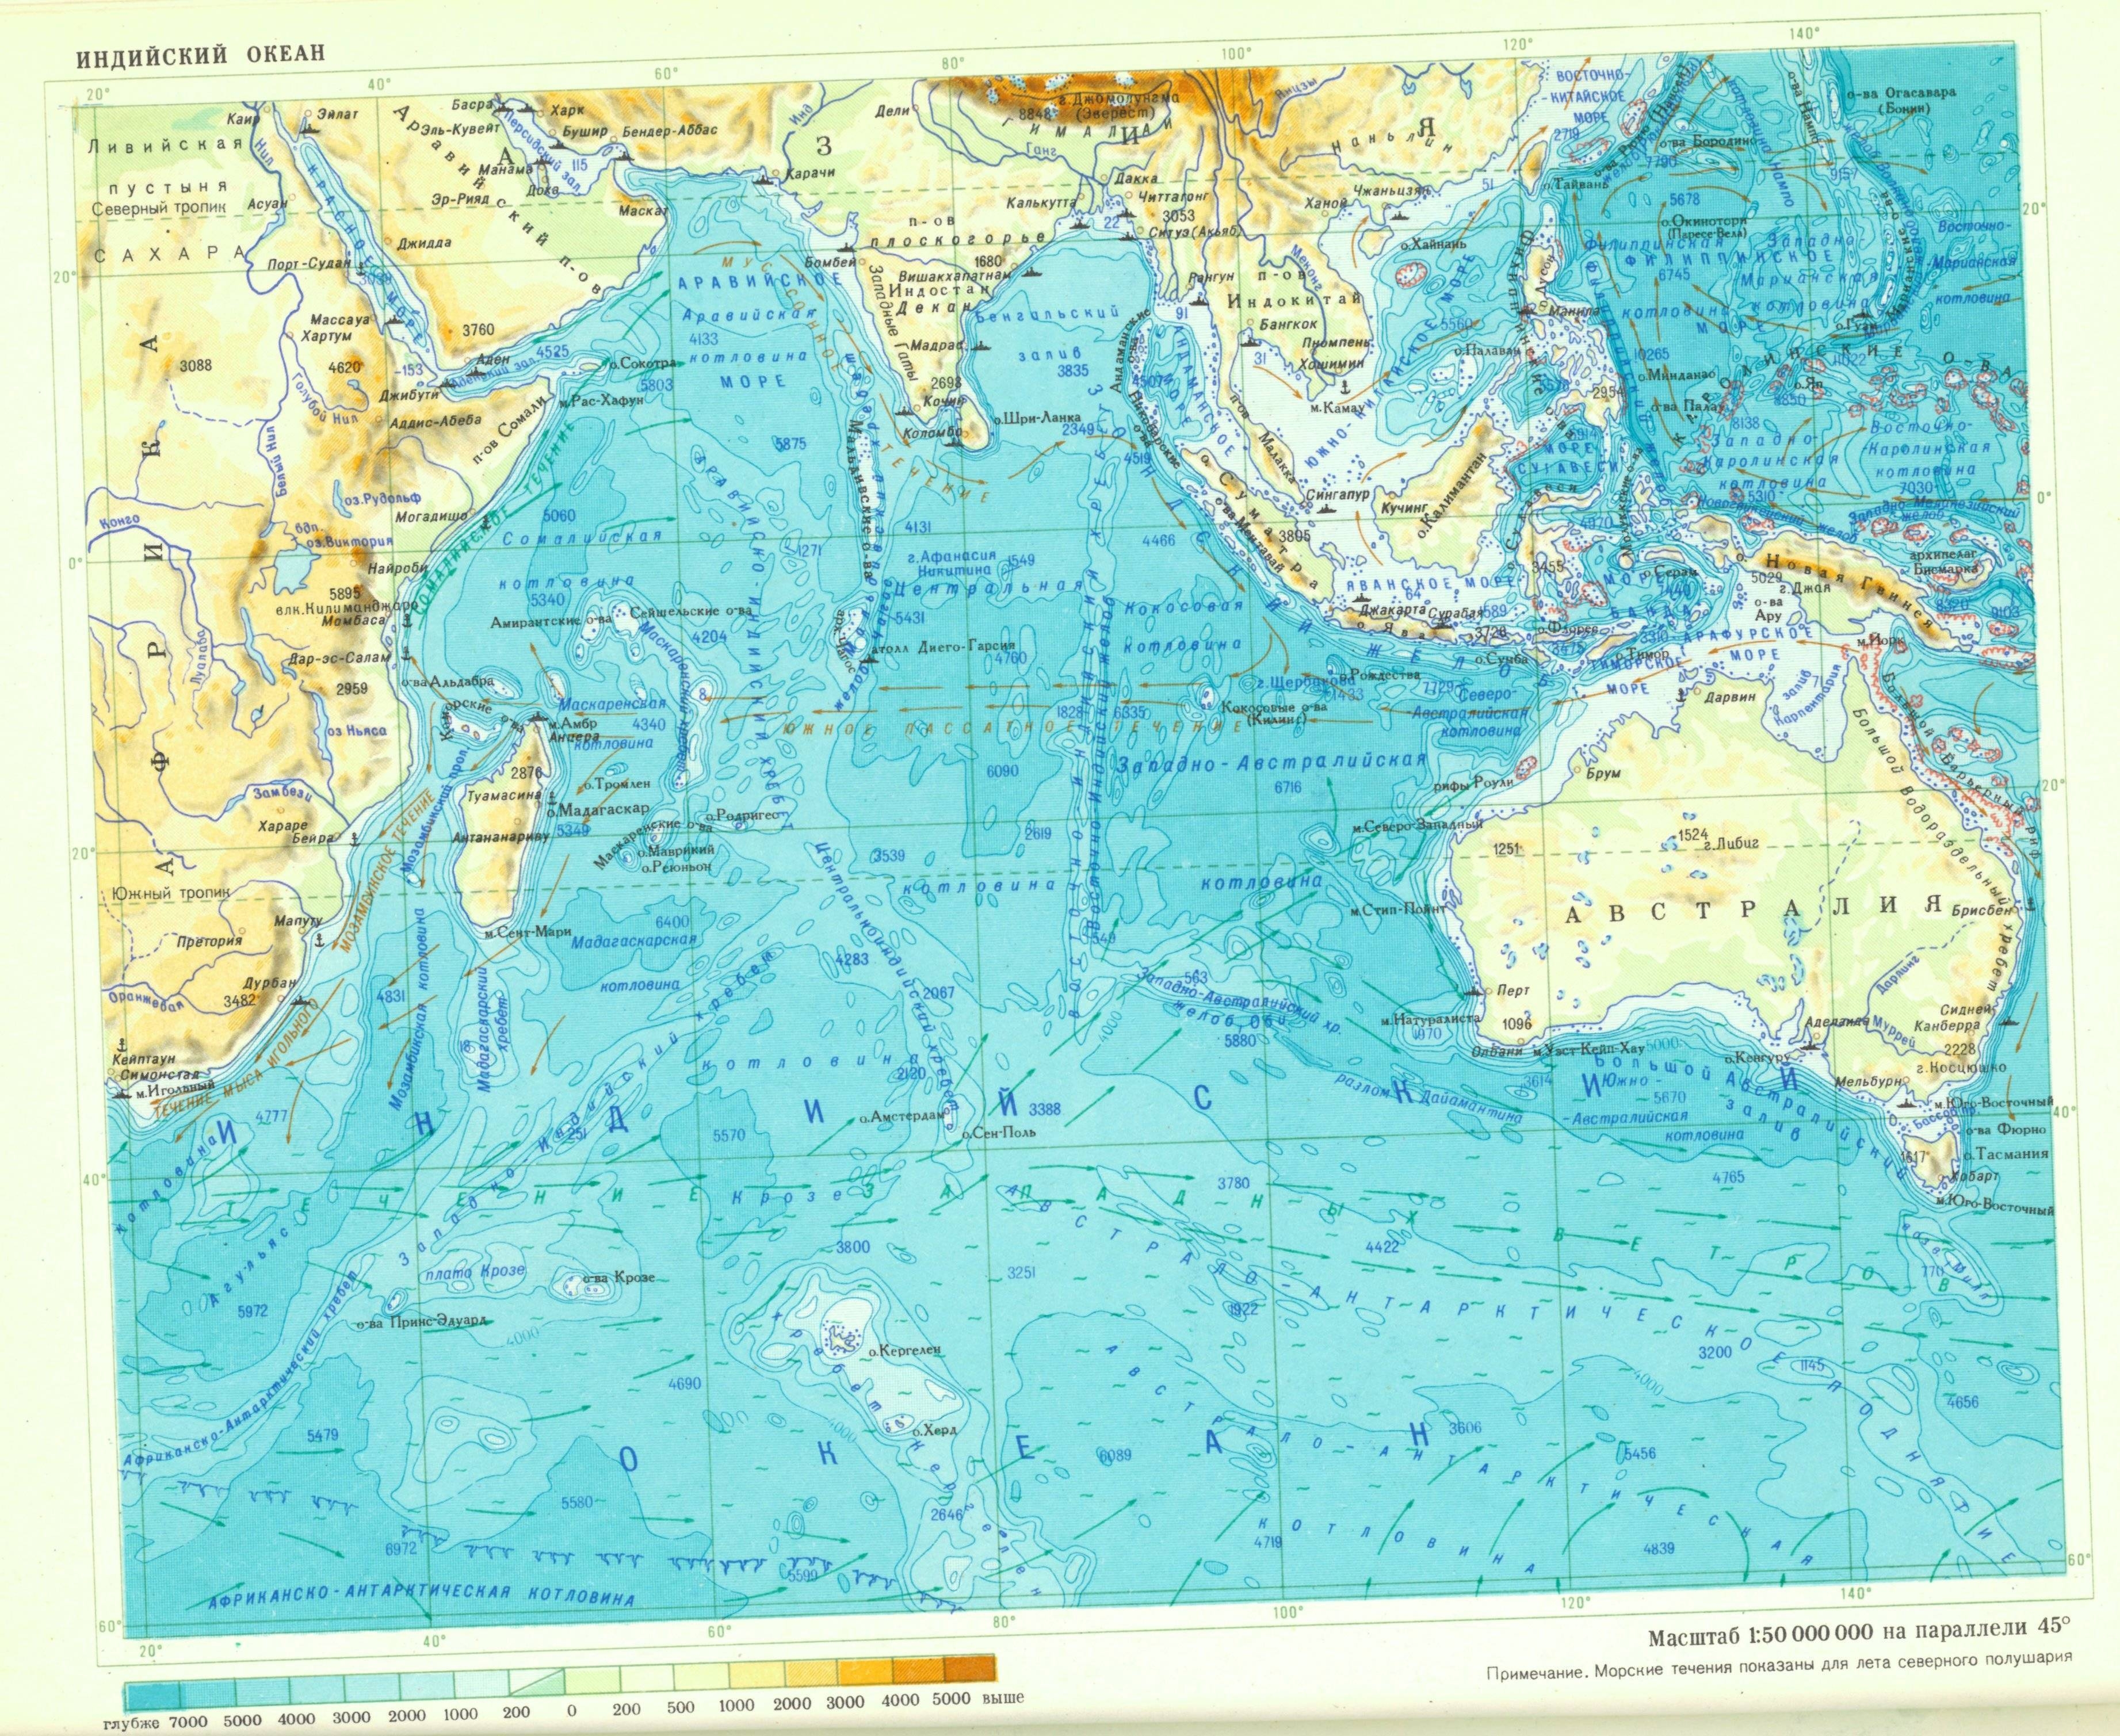 Восточная часть тихого океана. Проливы Тихого океана на карте. Тихий океан физическая карта подробная. Индийский океан карта подробная.